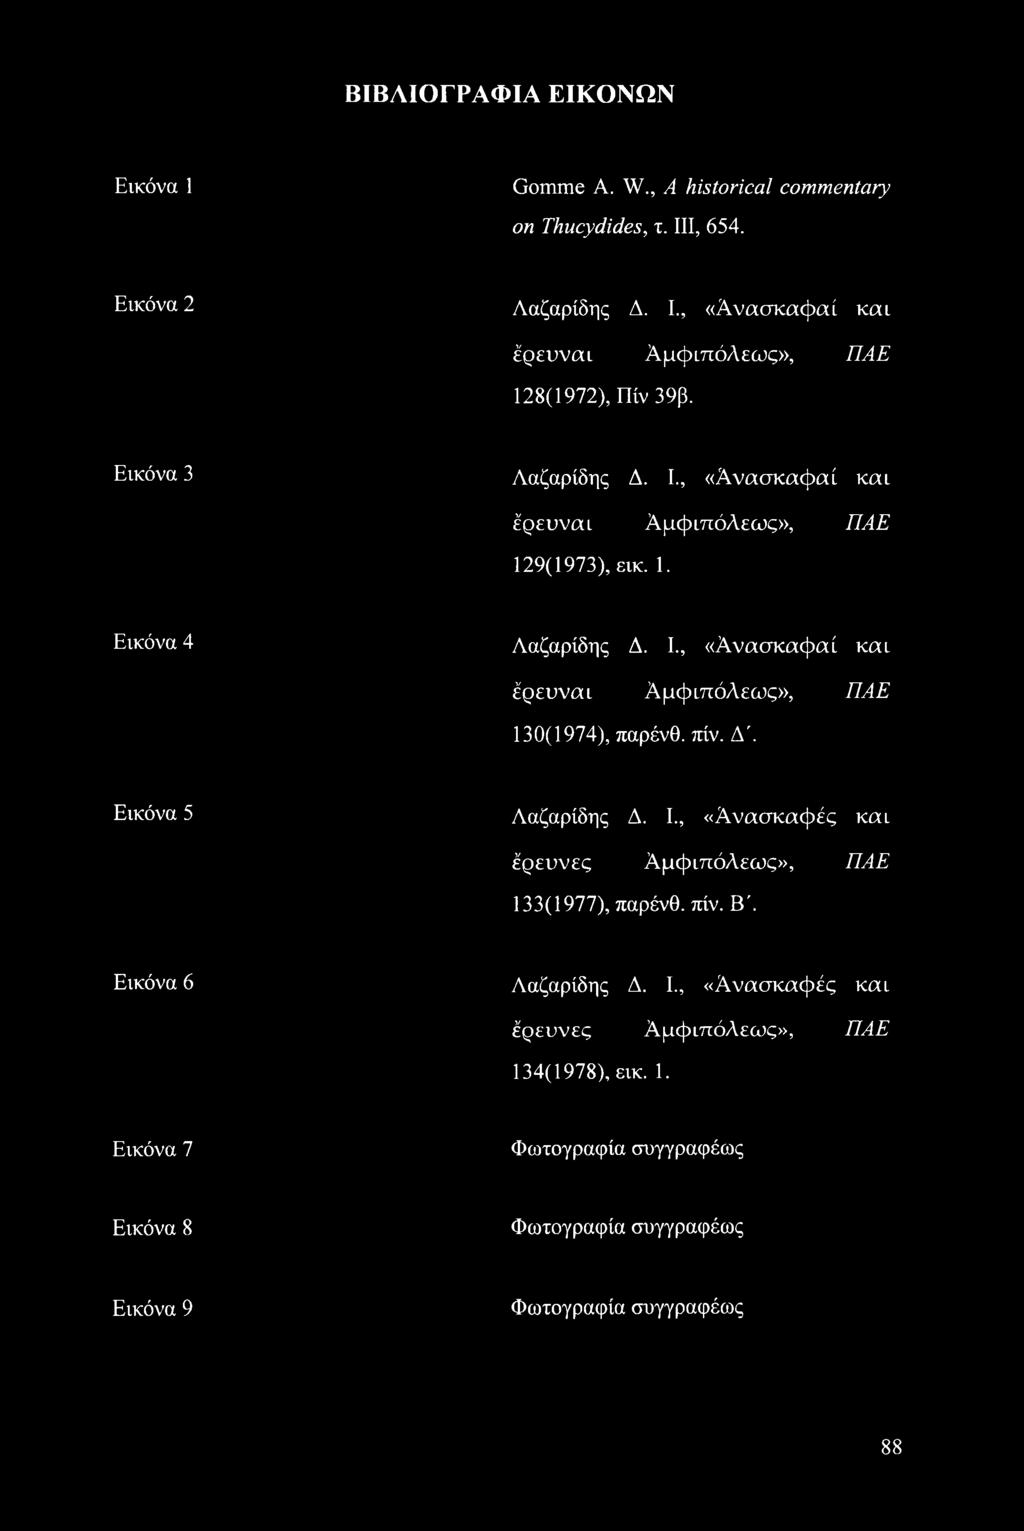 πίν. Δ 2 Εικόνα 5 Λαζαρίδης Δ. I., «Ανασκαφές και έρευνες Αμφιπόλεως», ΠΑΕ 133(1977), παρένθ. πίν. Β'. Εικόνα 6 Λαζαρίδης Δ. I., «Ανασκαφές και έρευνες Αμφιπόλεως», ΠΑΕ 134(1978), εικ.